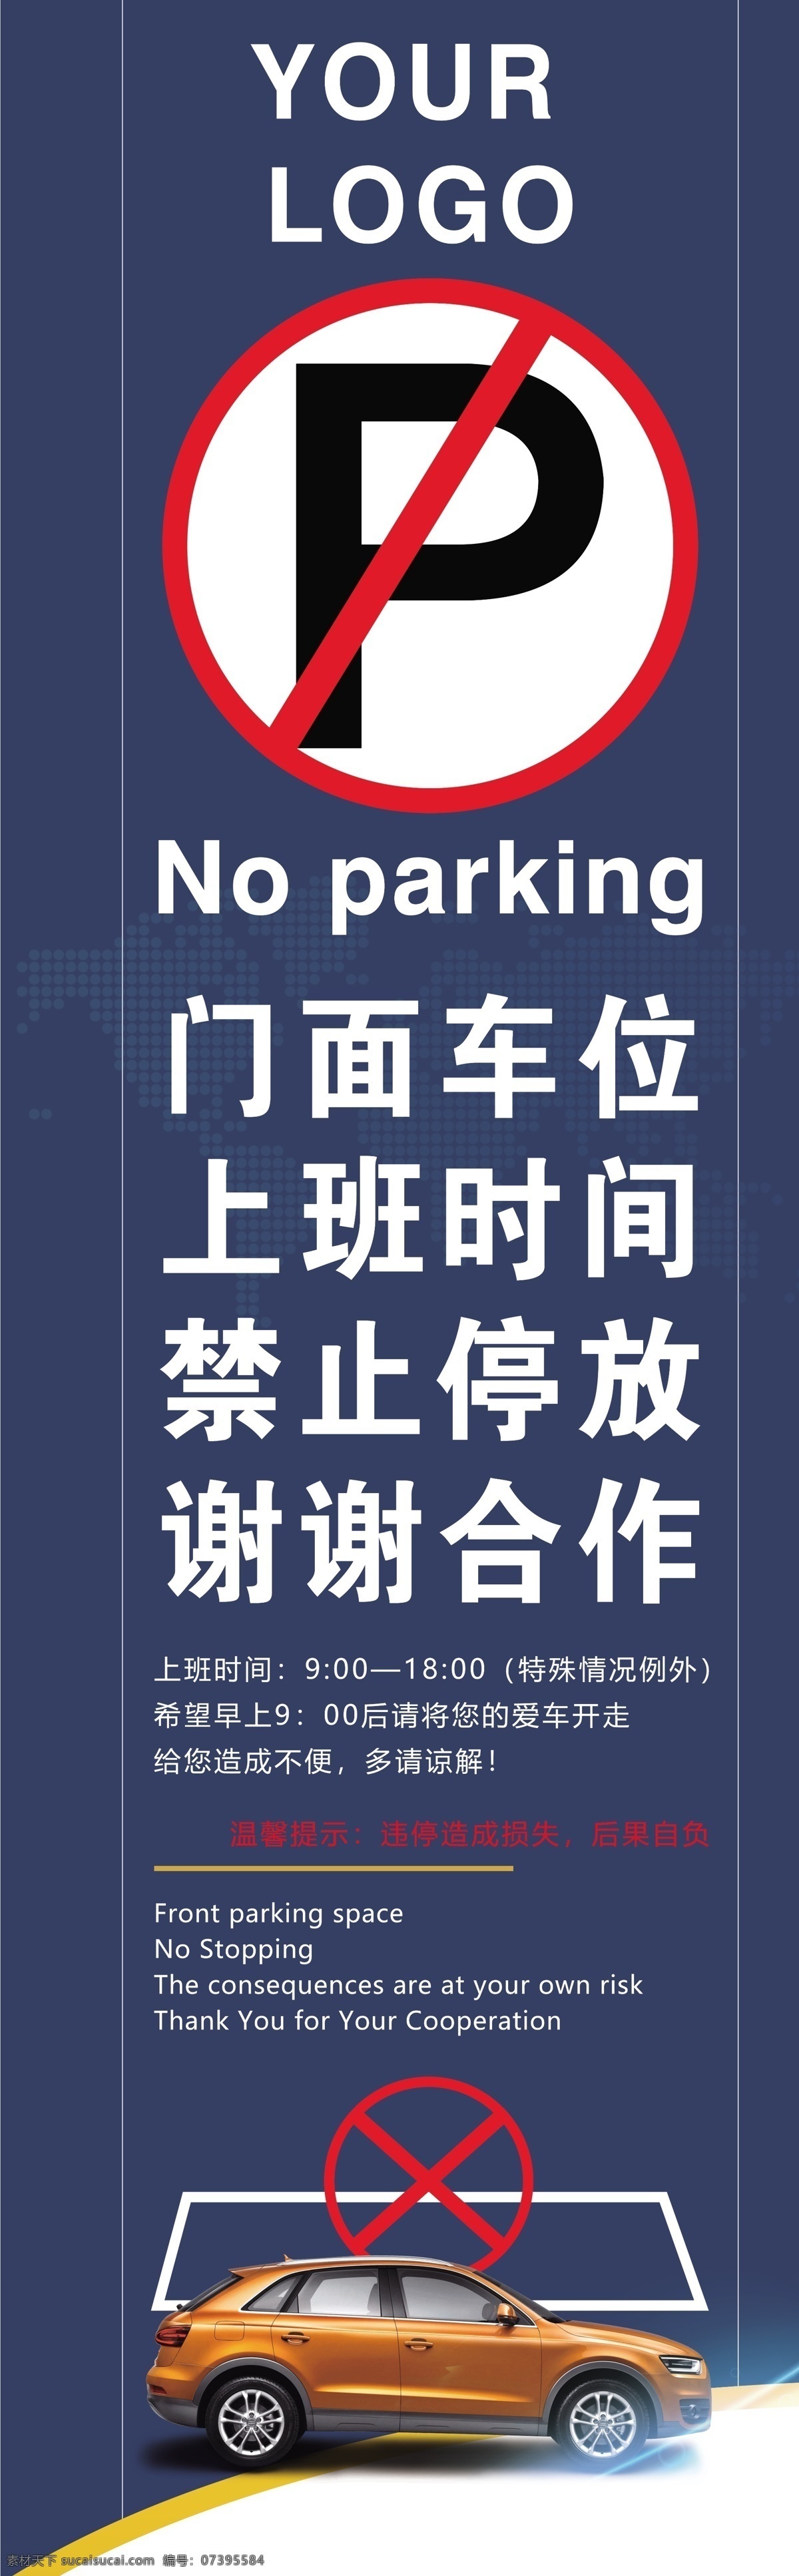 门前 禁止 停车 禁止停车 温馨提示 广告 竖版图